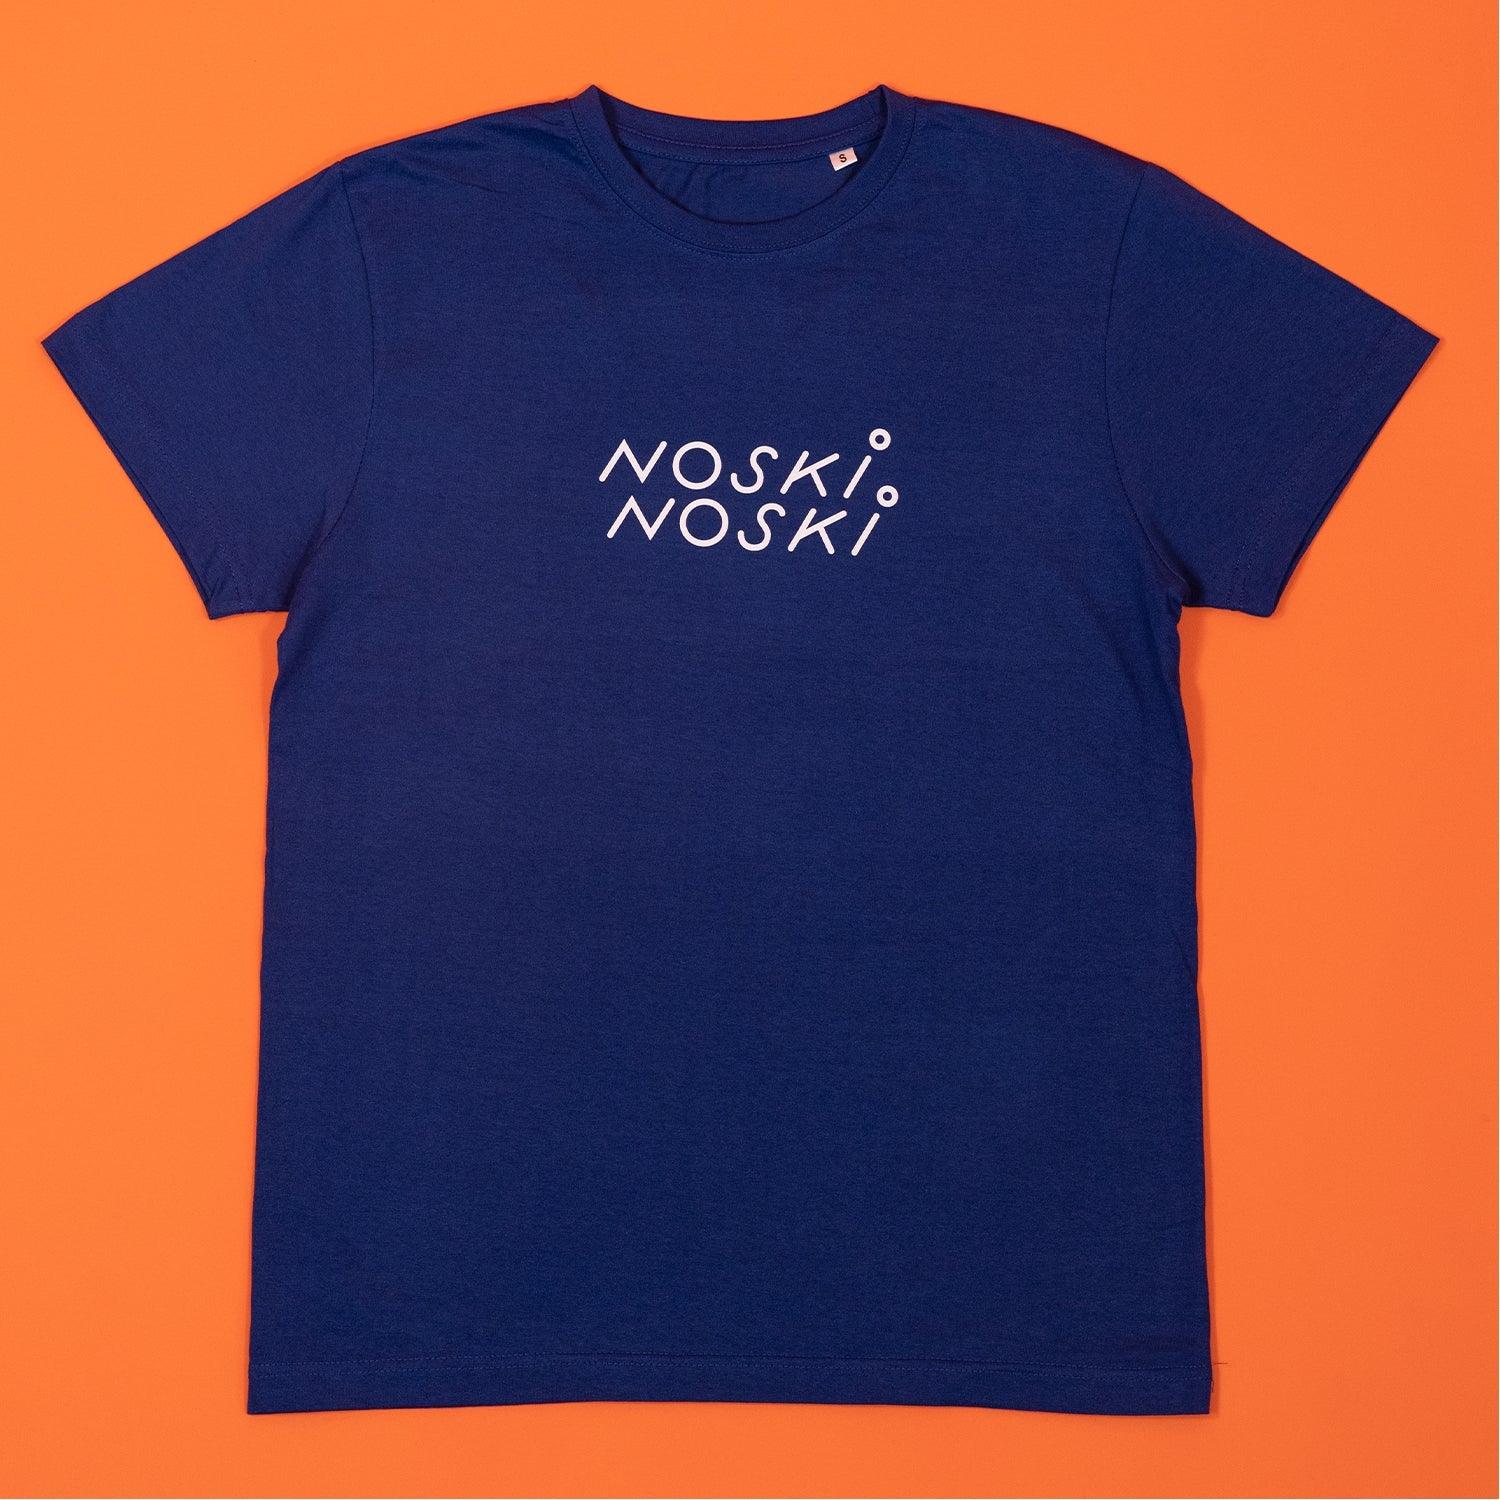 Noski Noski: NN shirt